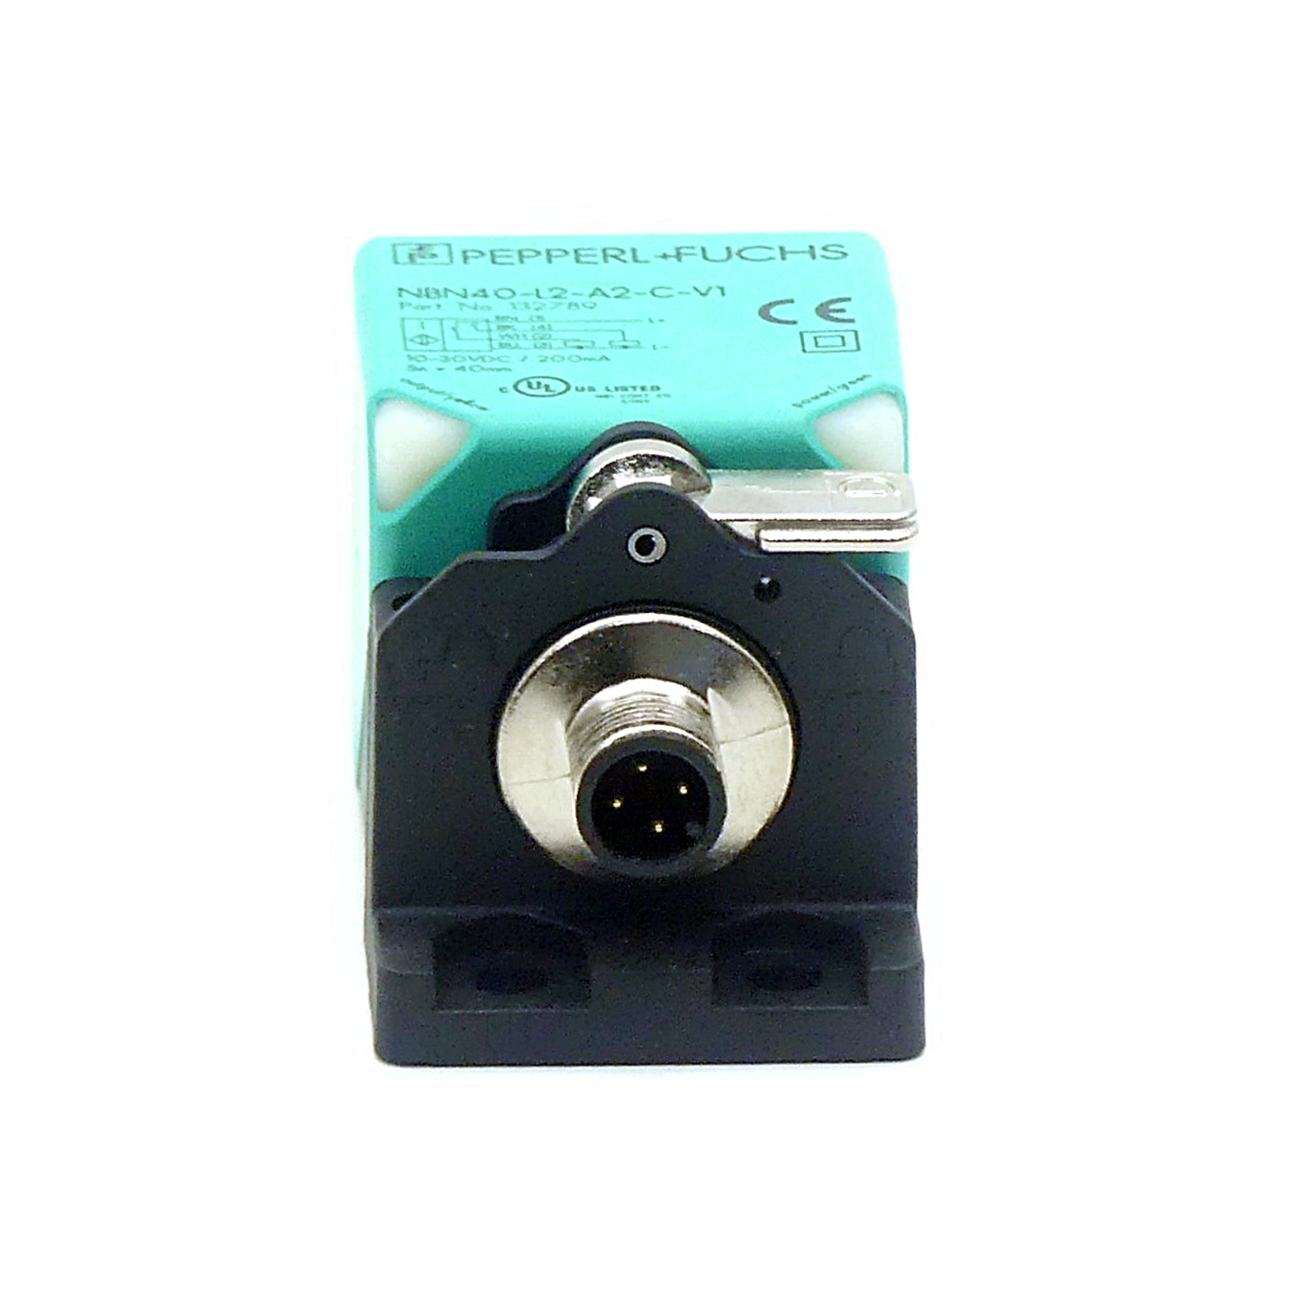 Induktiver Sensor NBN40-L2-A2-C-V1 